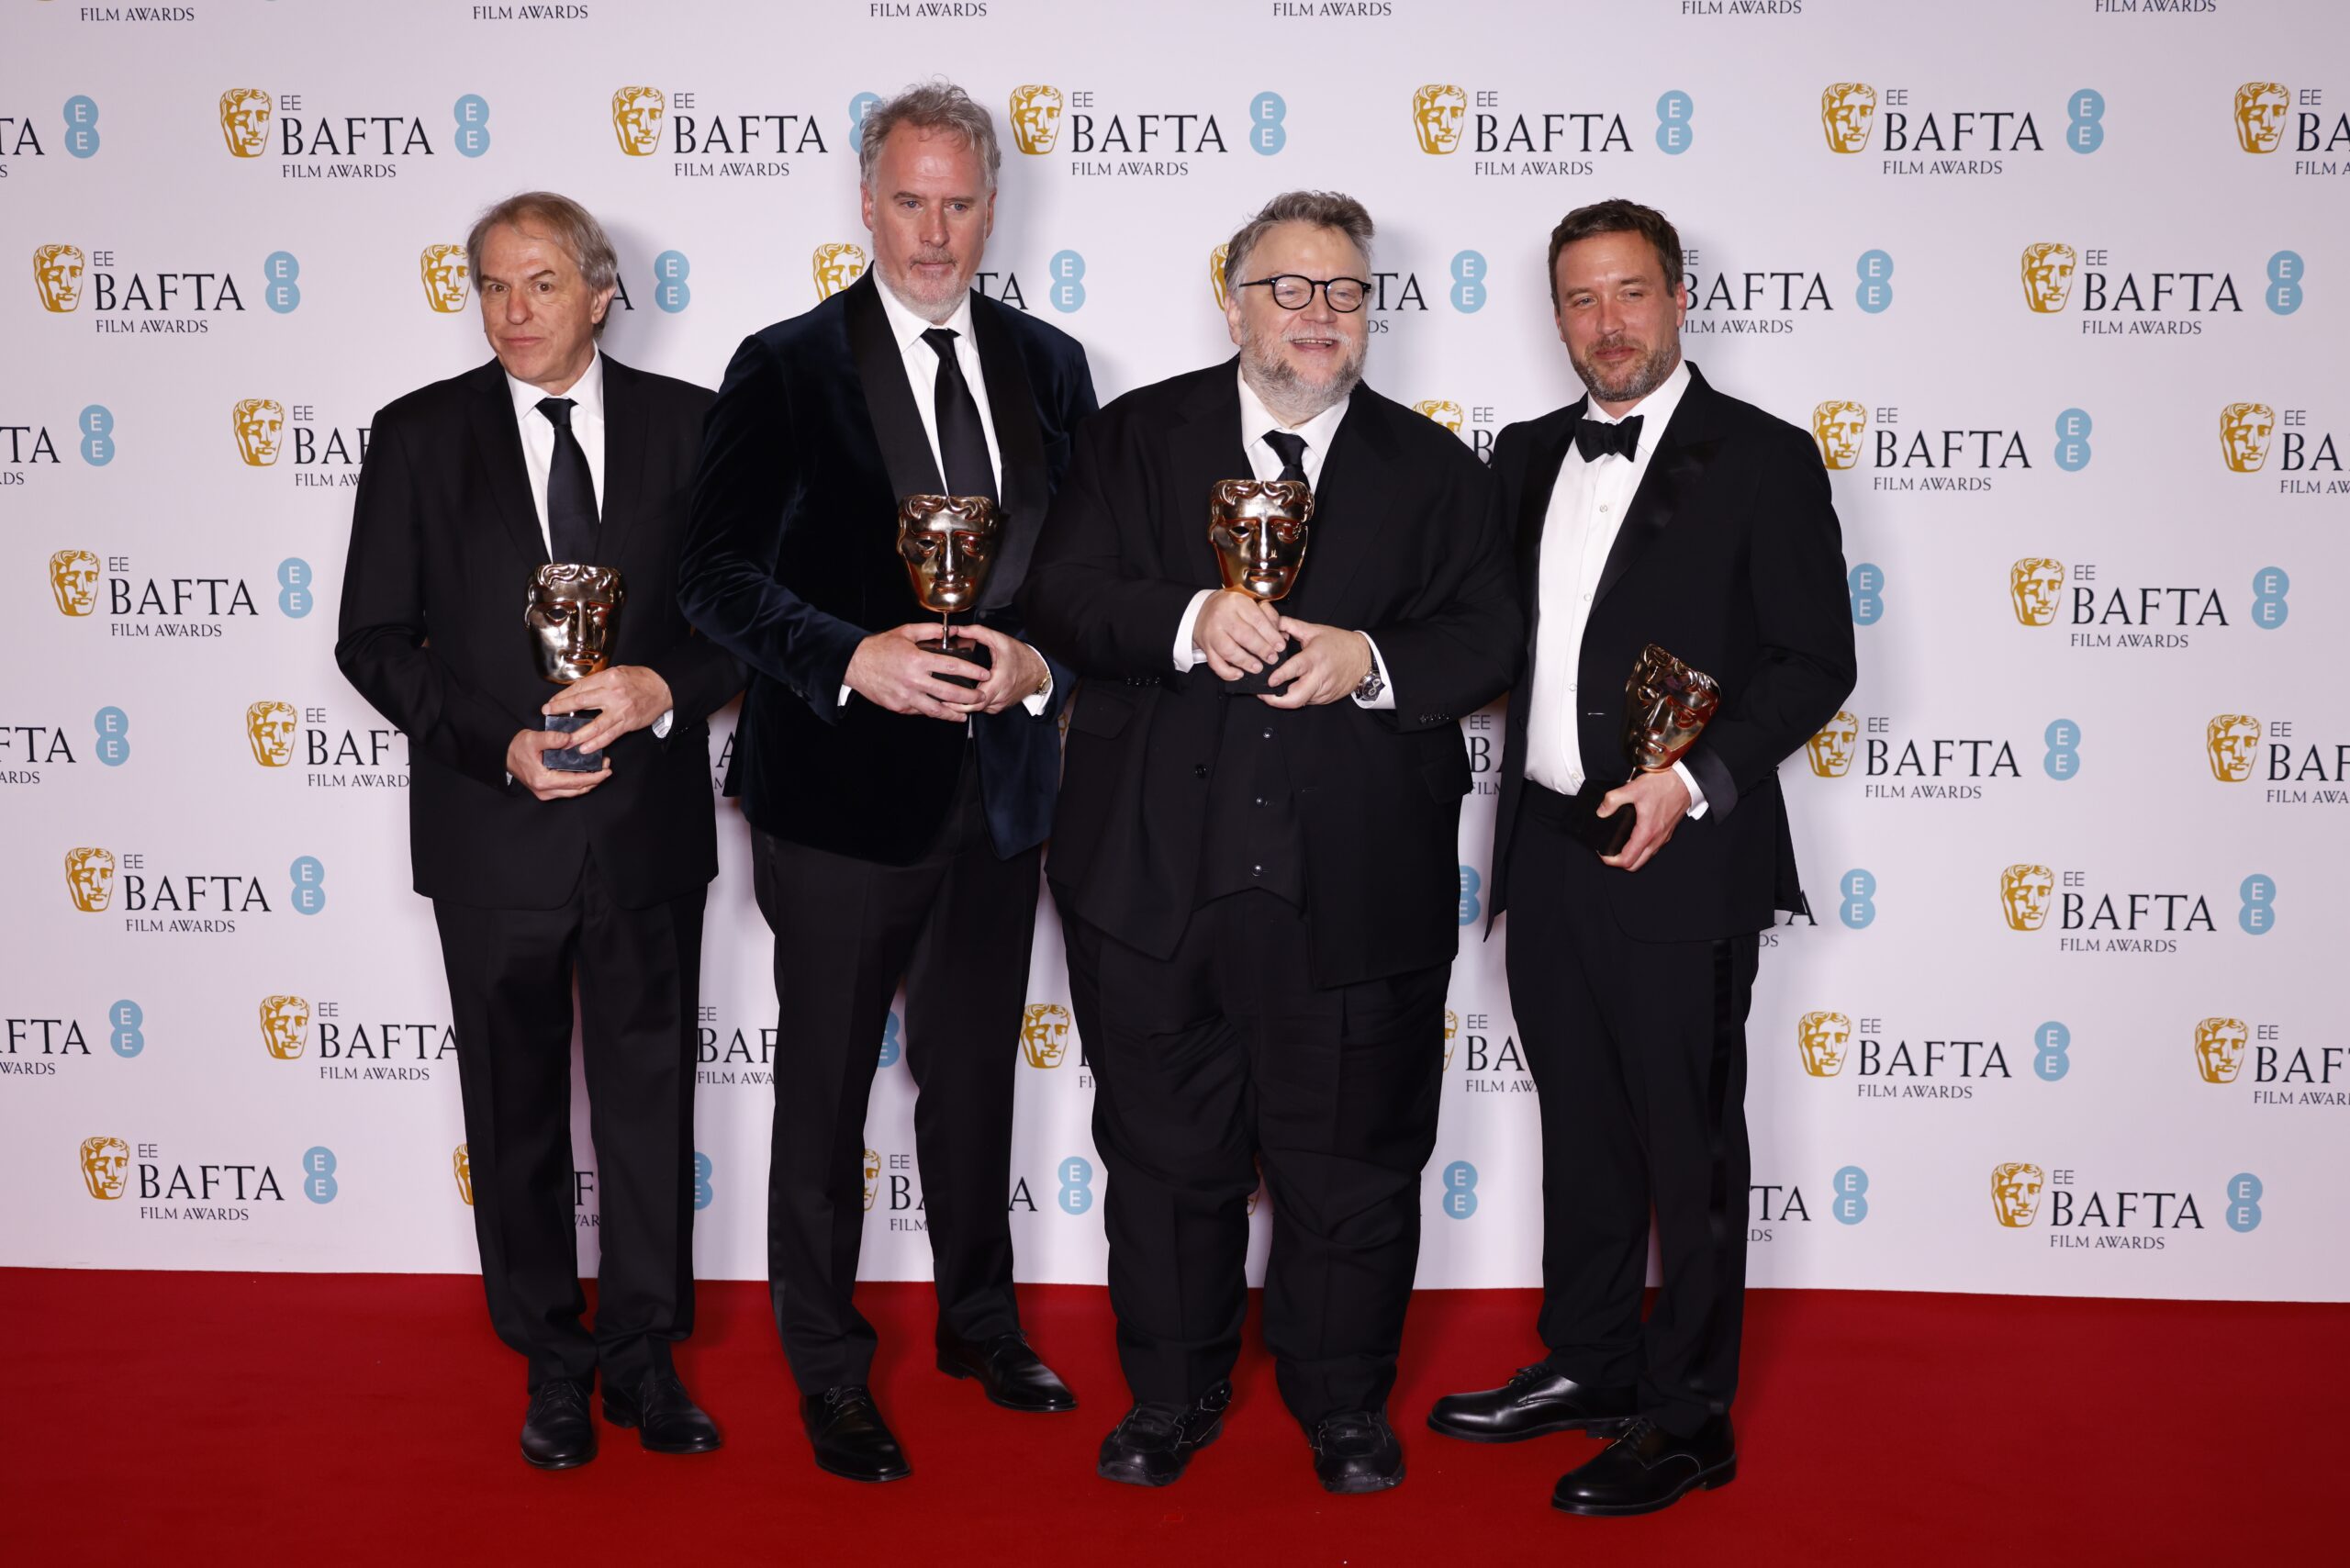 Del Toro gana el Bafta a la mejor película animada con "Pinocchio"